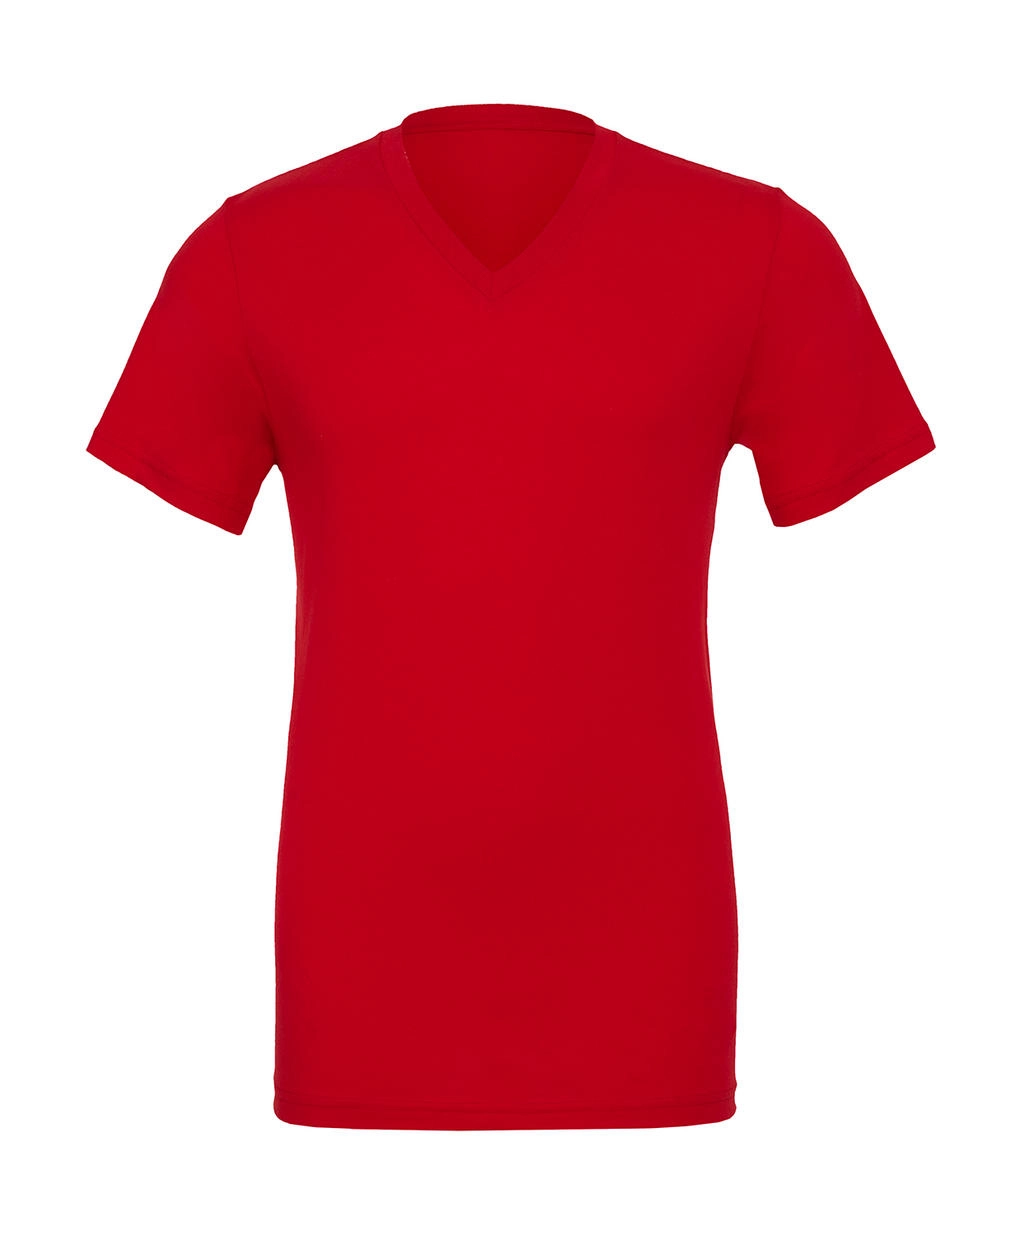 Unisex Jersey V-Neck T-Shirt zum Besticken und Bedrucken in der Farbe Red mit Ihren Logo, Schriftzug oder Motiv.